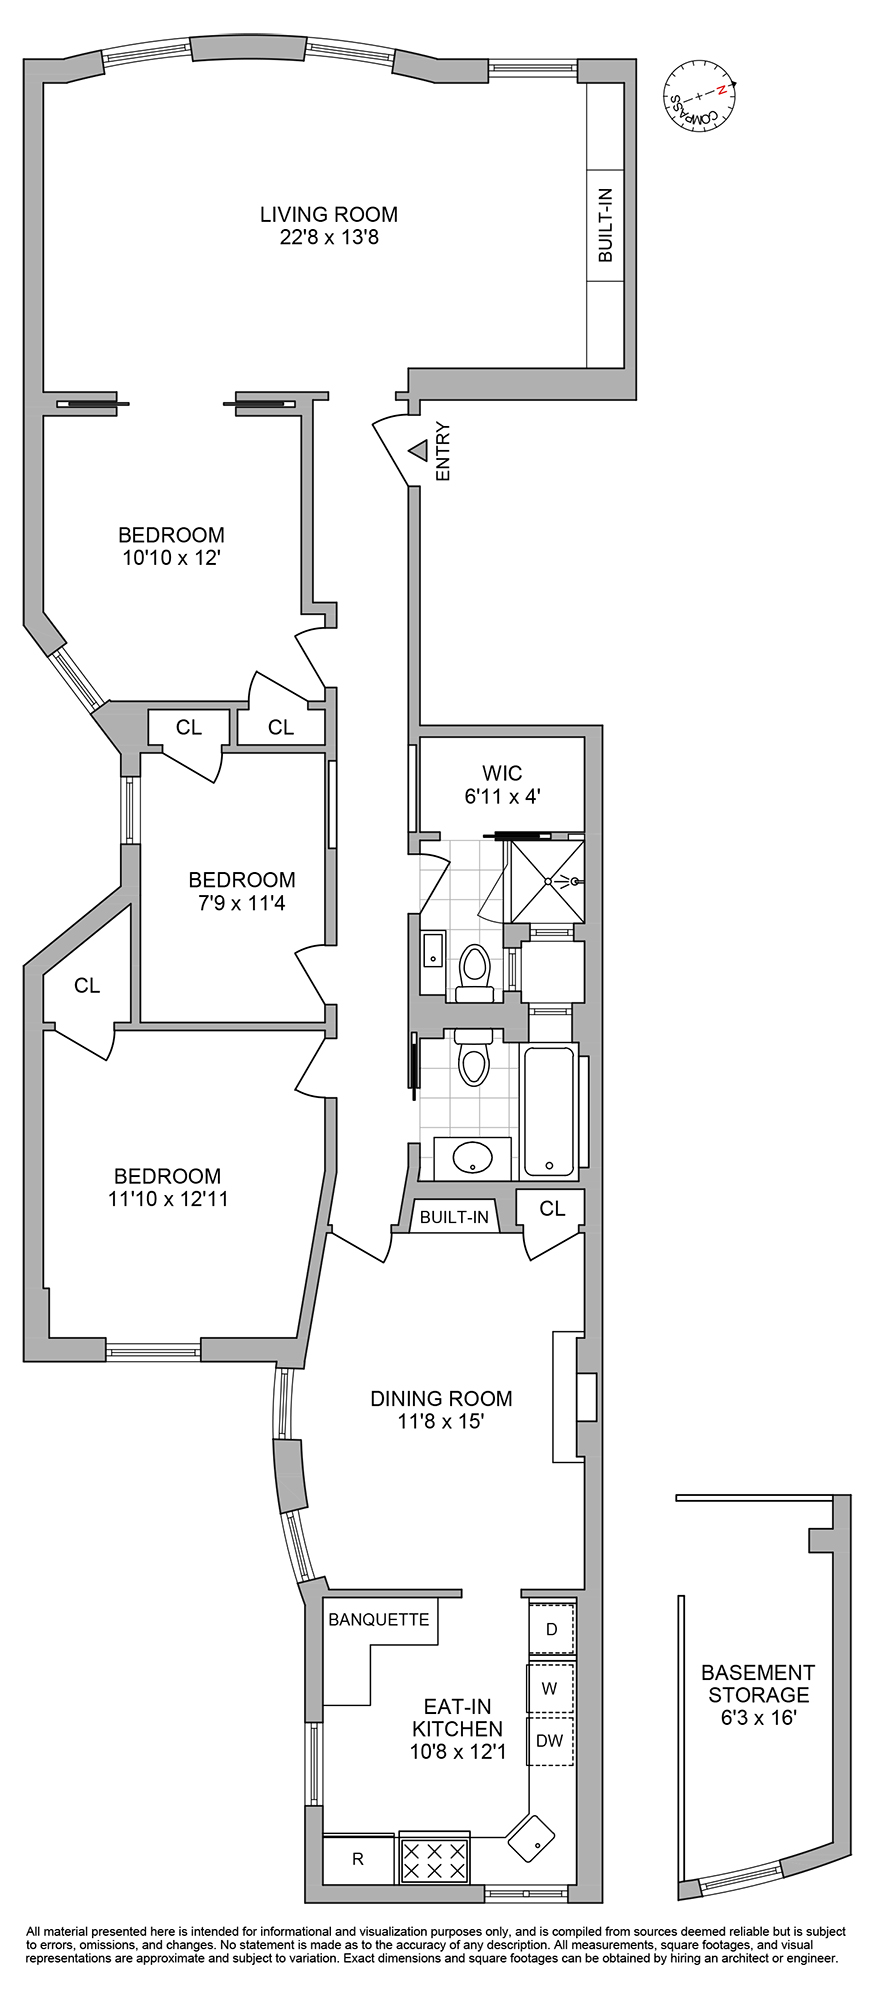 Floorplan for 25 Garden Place, 3